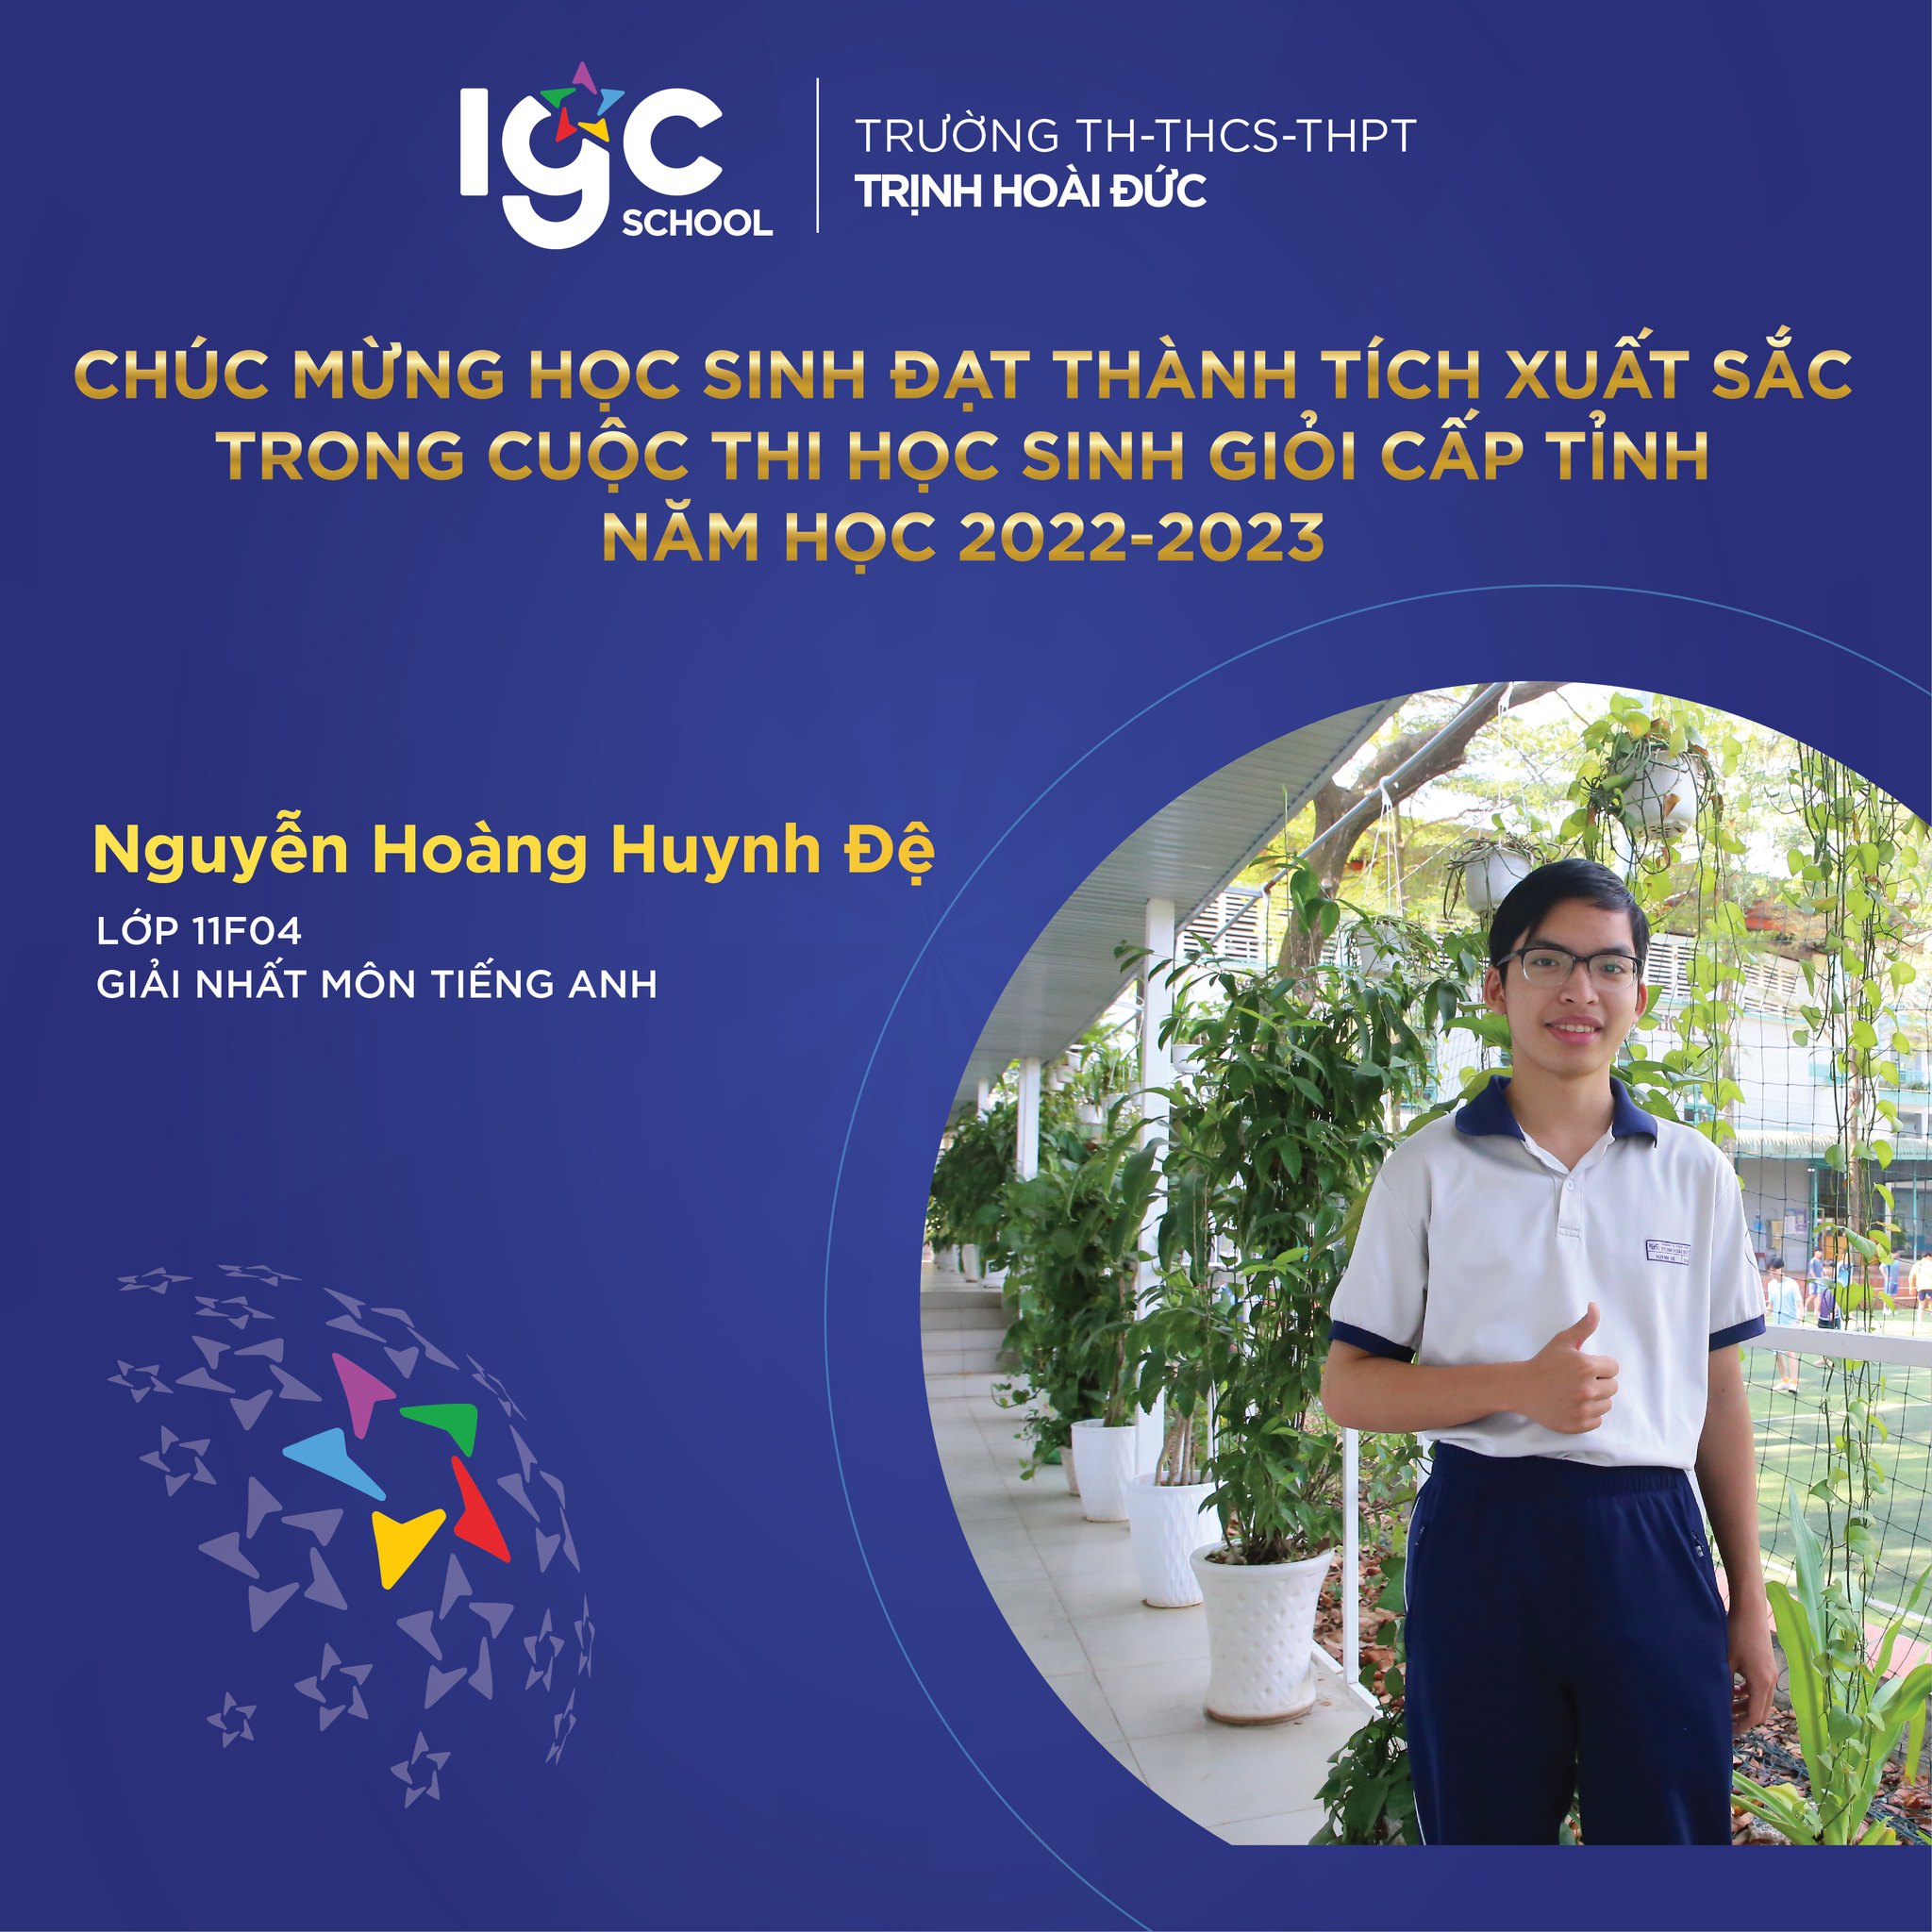 Chúc mừng những gương mặt vàng của trường TH-THCS-THPT Trịnh Hoài Đức đã đạt kết quả tốt trong kỳ thi học sinh giỏi cấp Tỉnh năm học 2022-2023